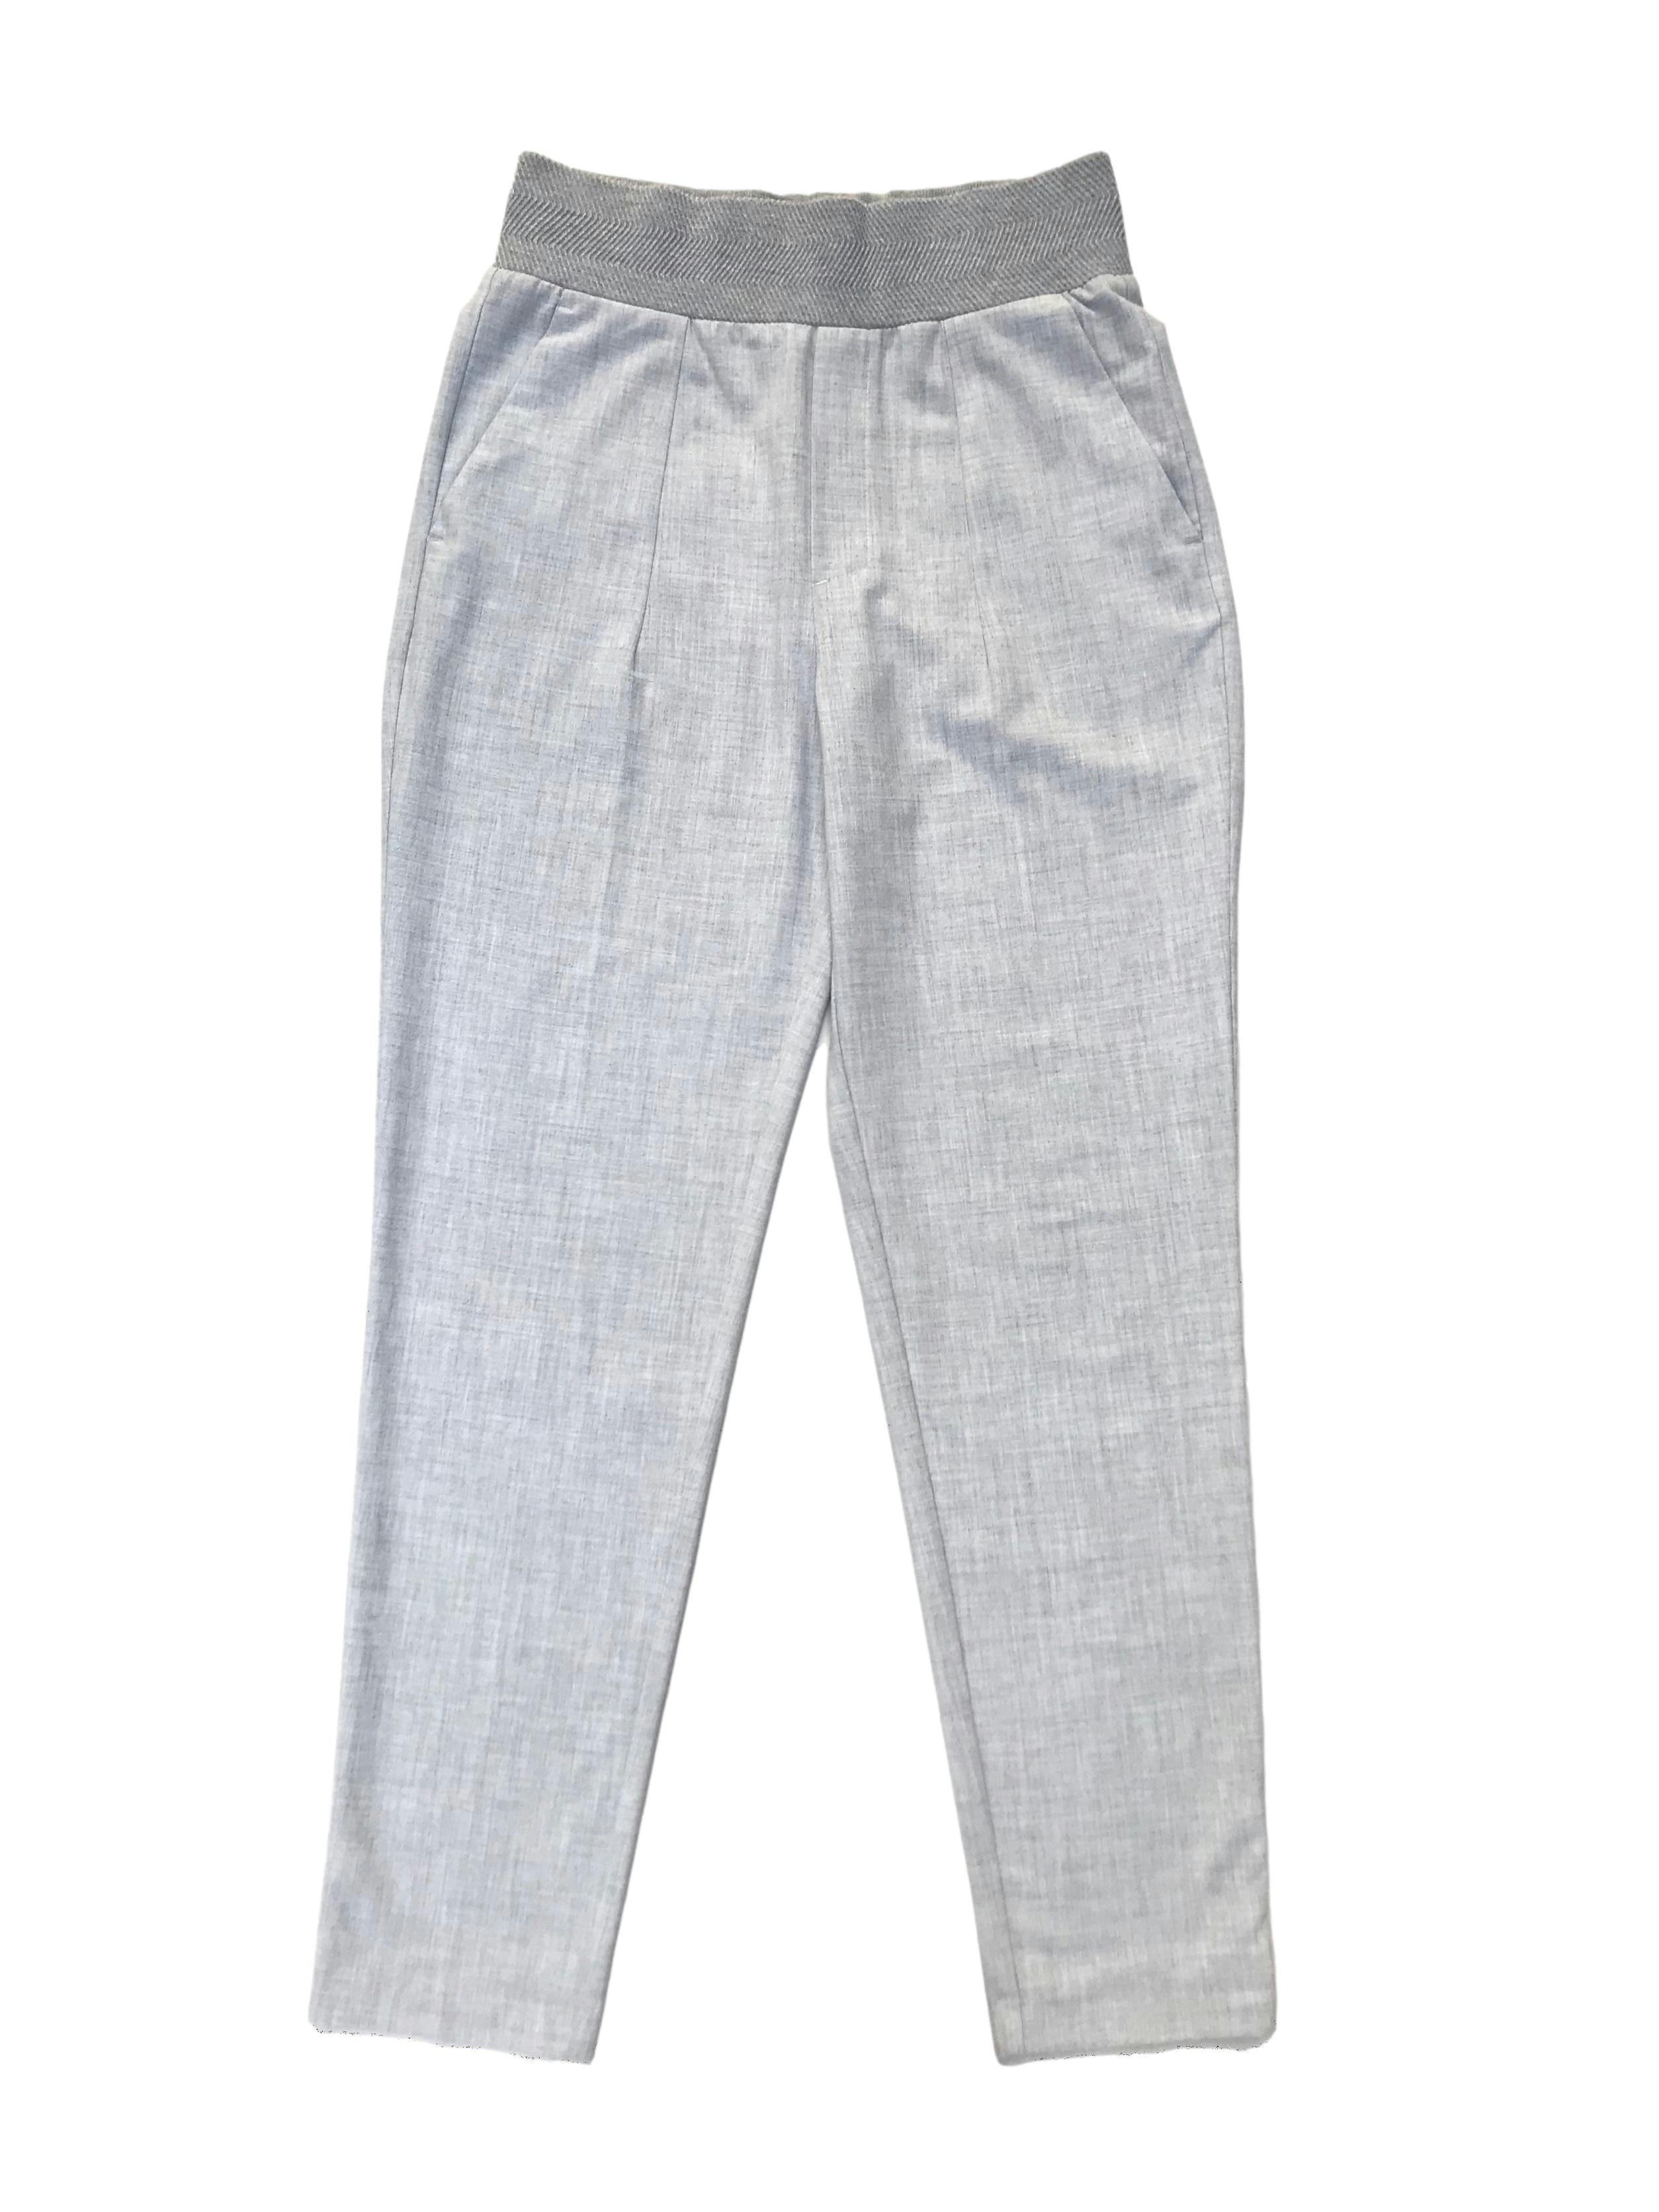 Pantalón formal Zara plomo, a la cintura, corte slim, con bolsillos laterales y pretina ancha. Cintura 70cm Largo 102cm. Precio original S/ 159